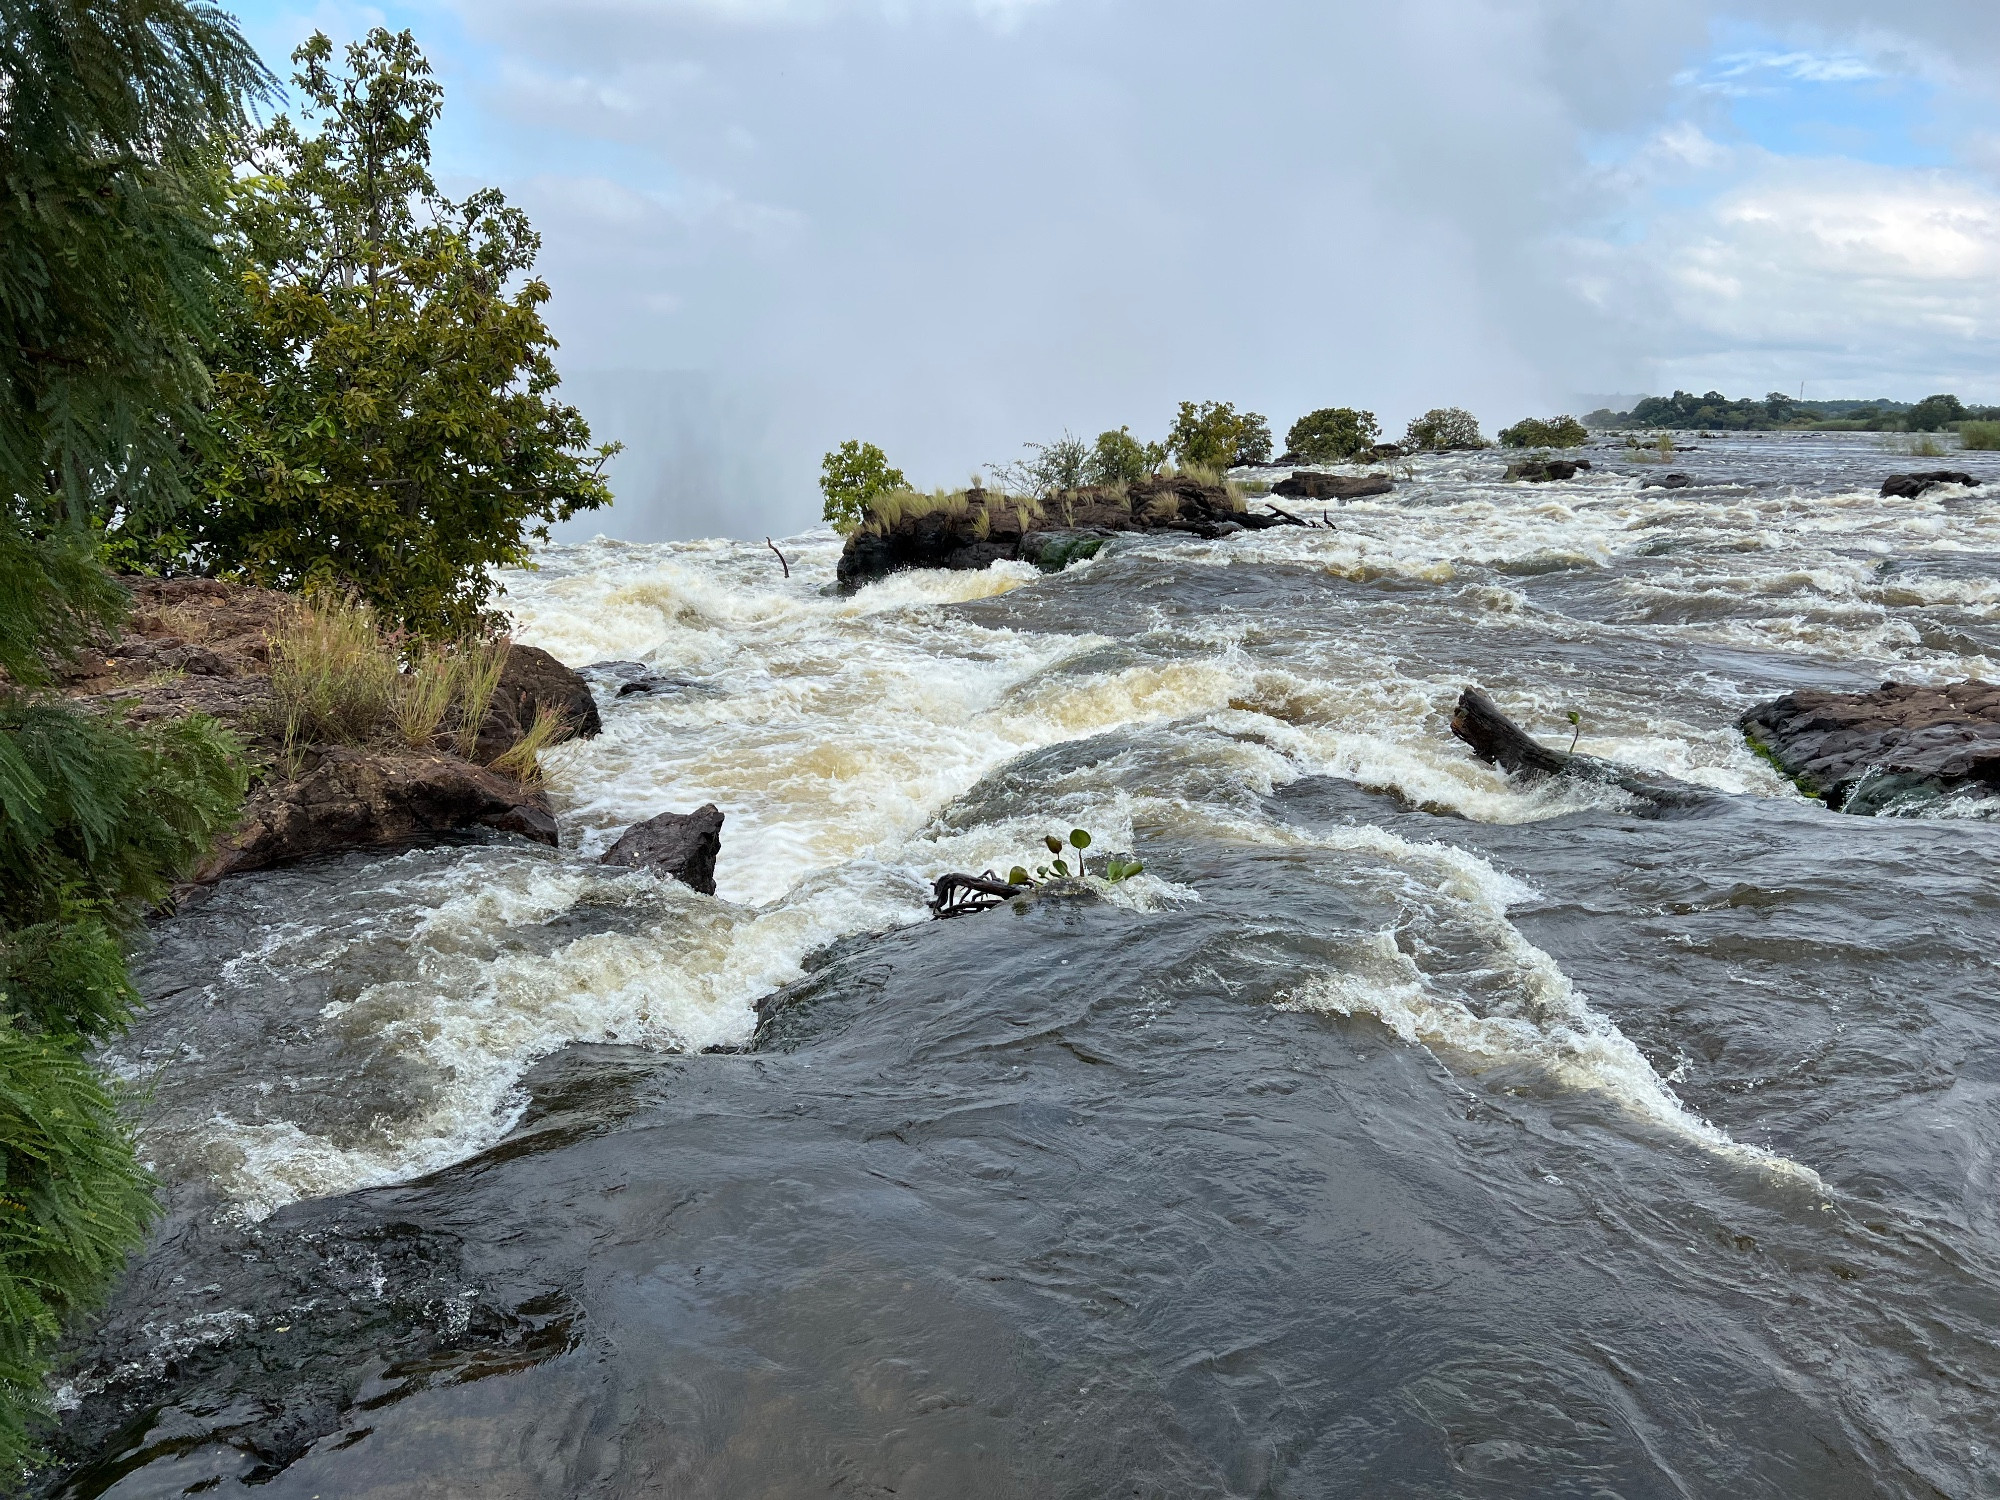 Водопад Виктория, Замбия